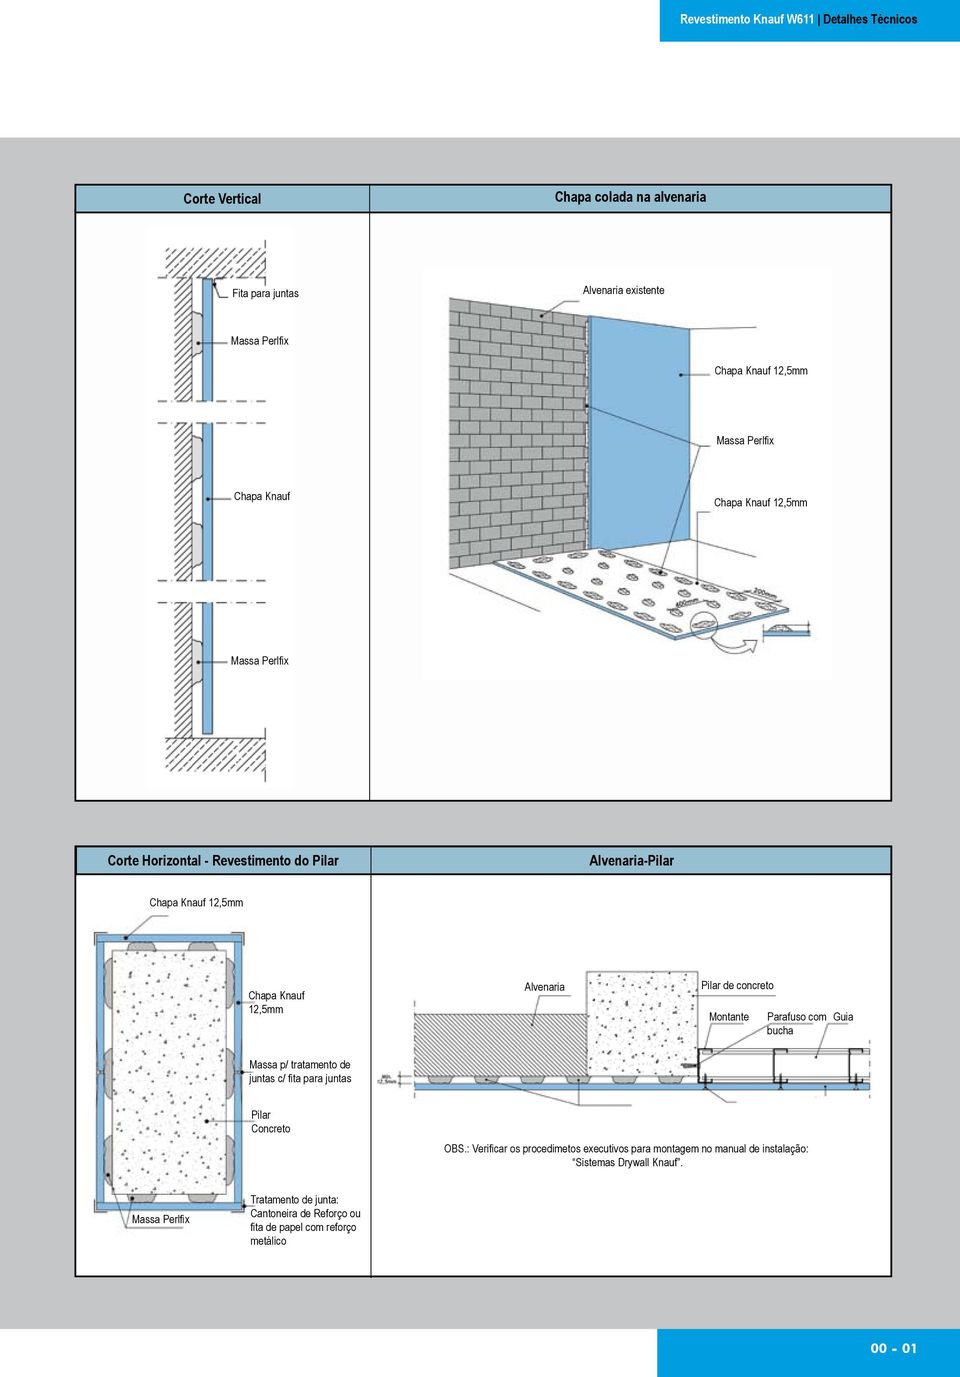 Pilar de concreto com bucha Massa p/ tratamento de juntas c/ fita para juntas Pilar Concreto OBS.